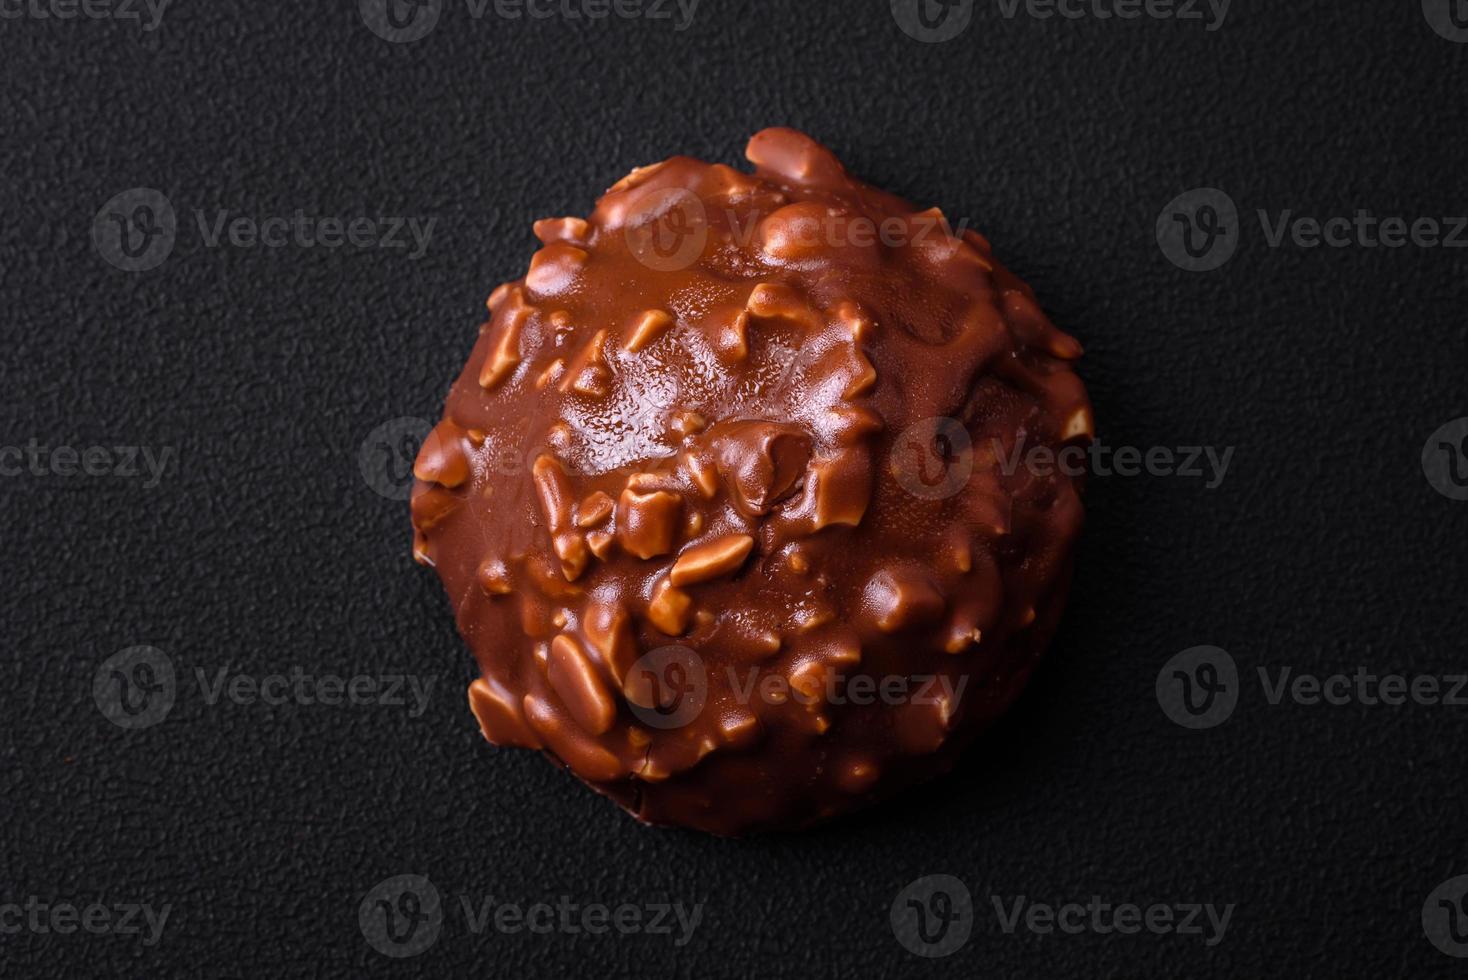 deliciosa tarta de chocolate con nueces en un plato de cerámica negra foto